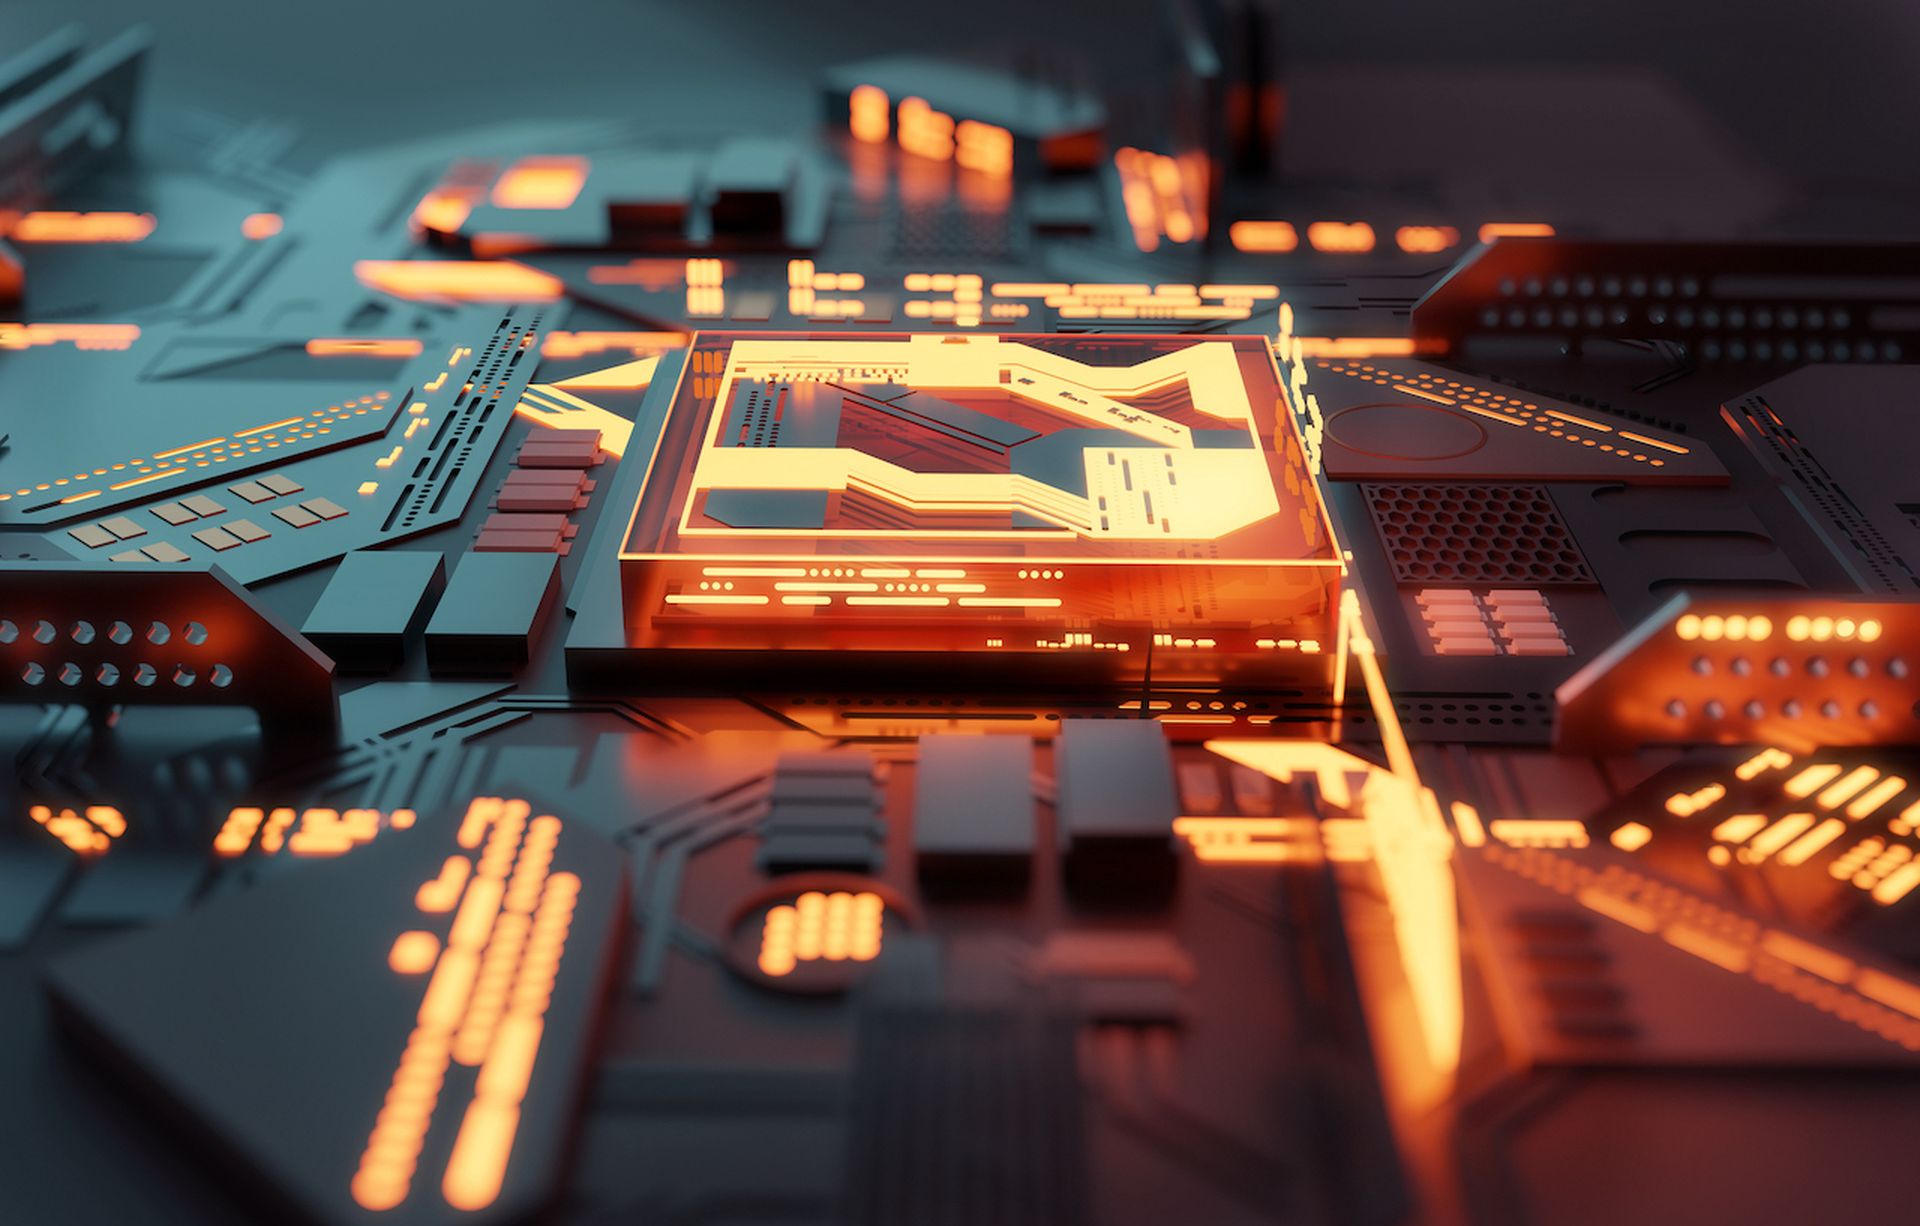 A futuristic glowing CPU quantum computer processor. 3D illustration.